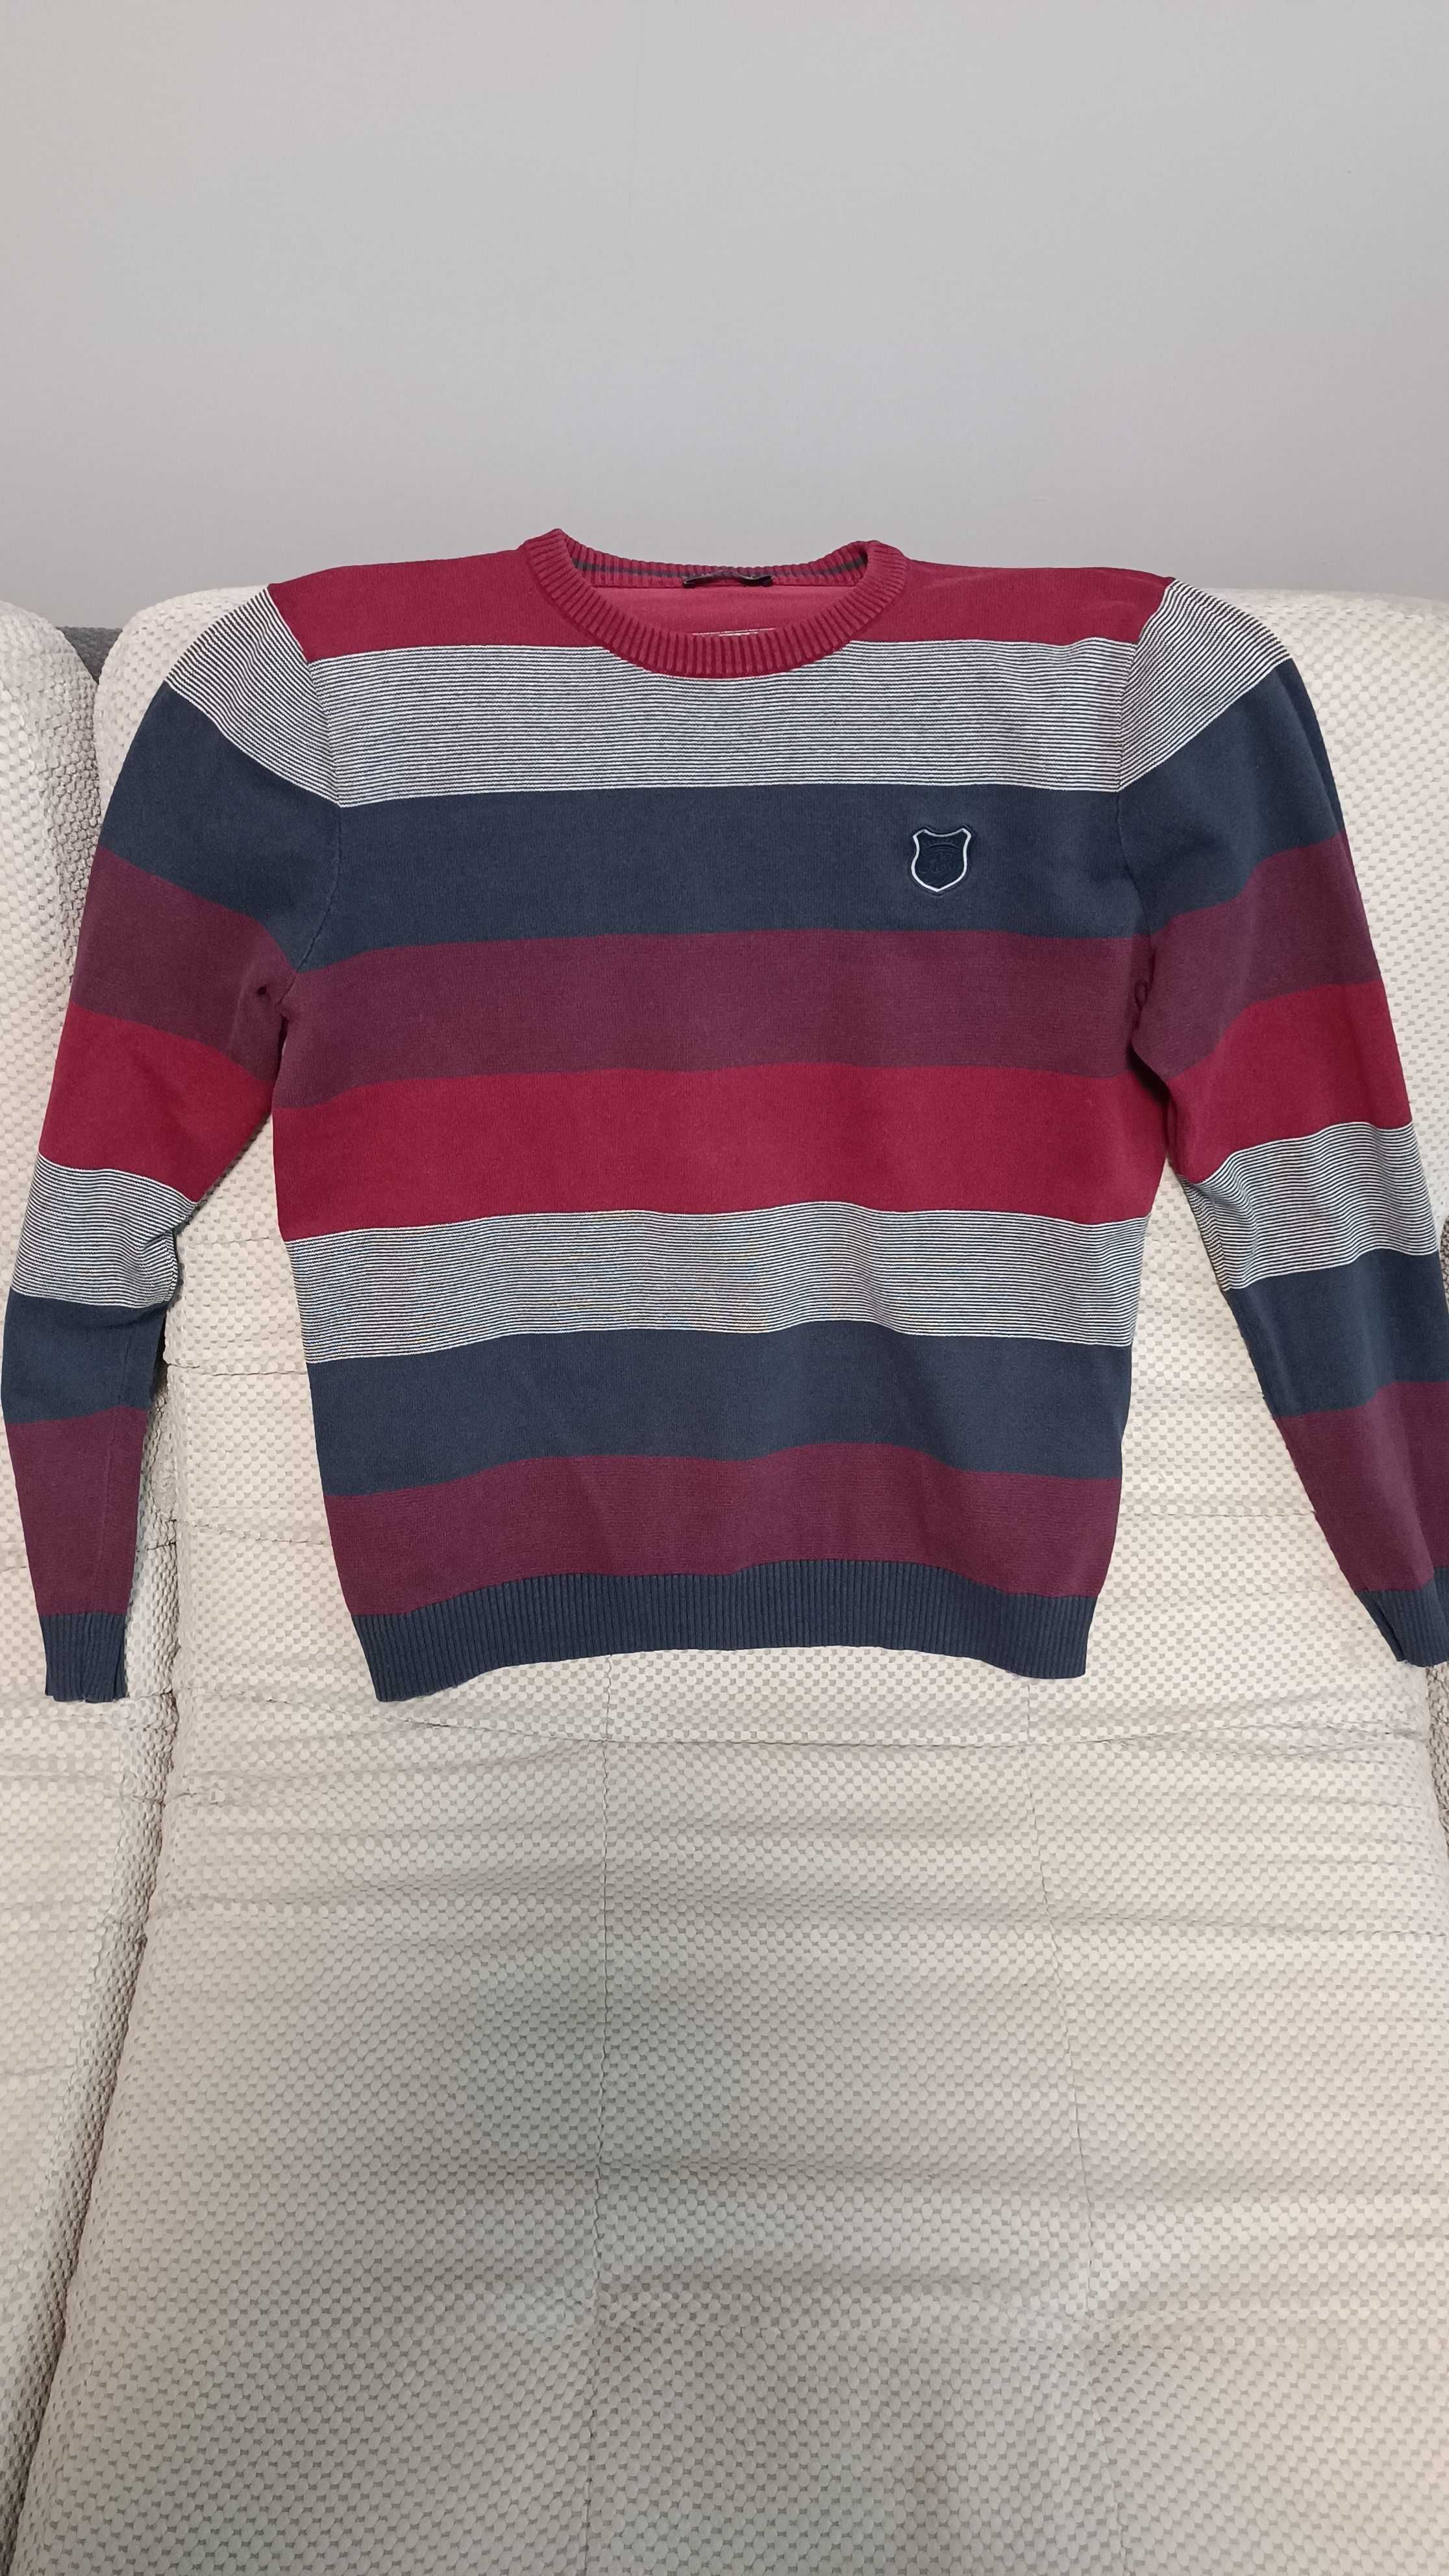 Стильный мужской свитер L разноцветный кофта джемпер батник LC Waikiki